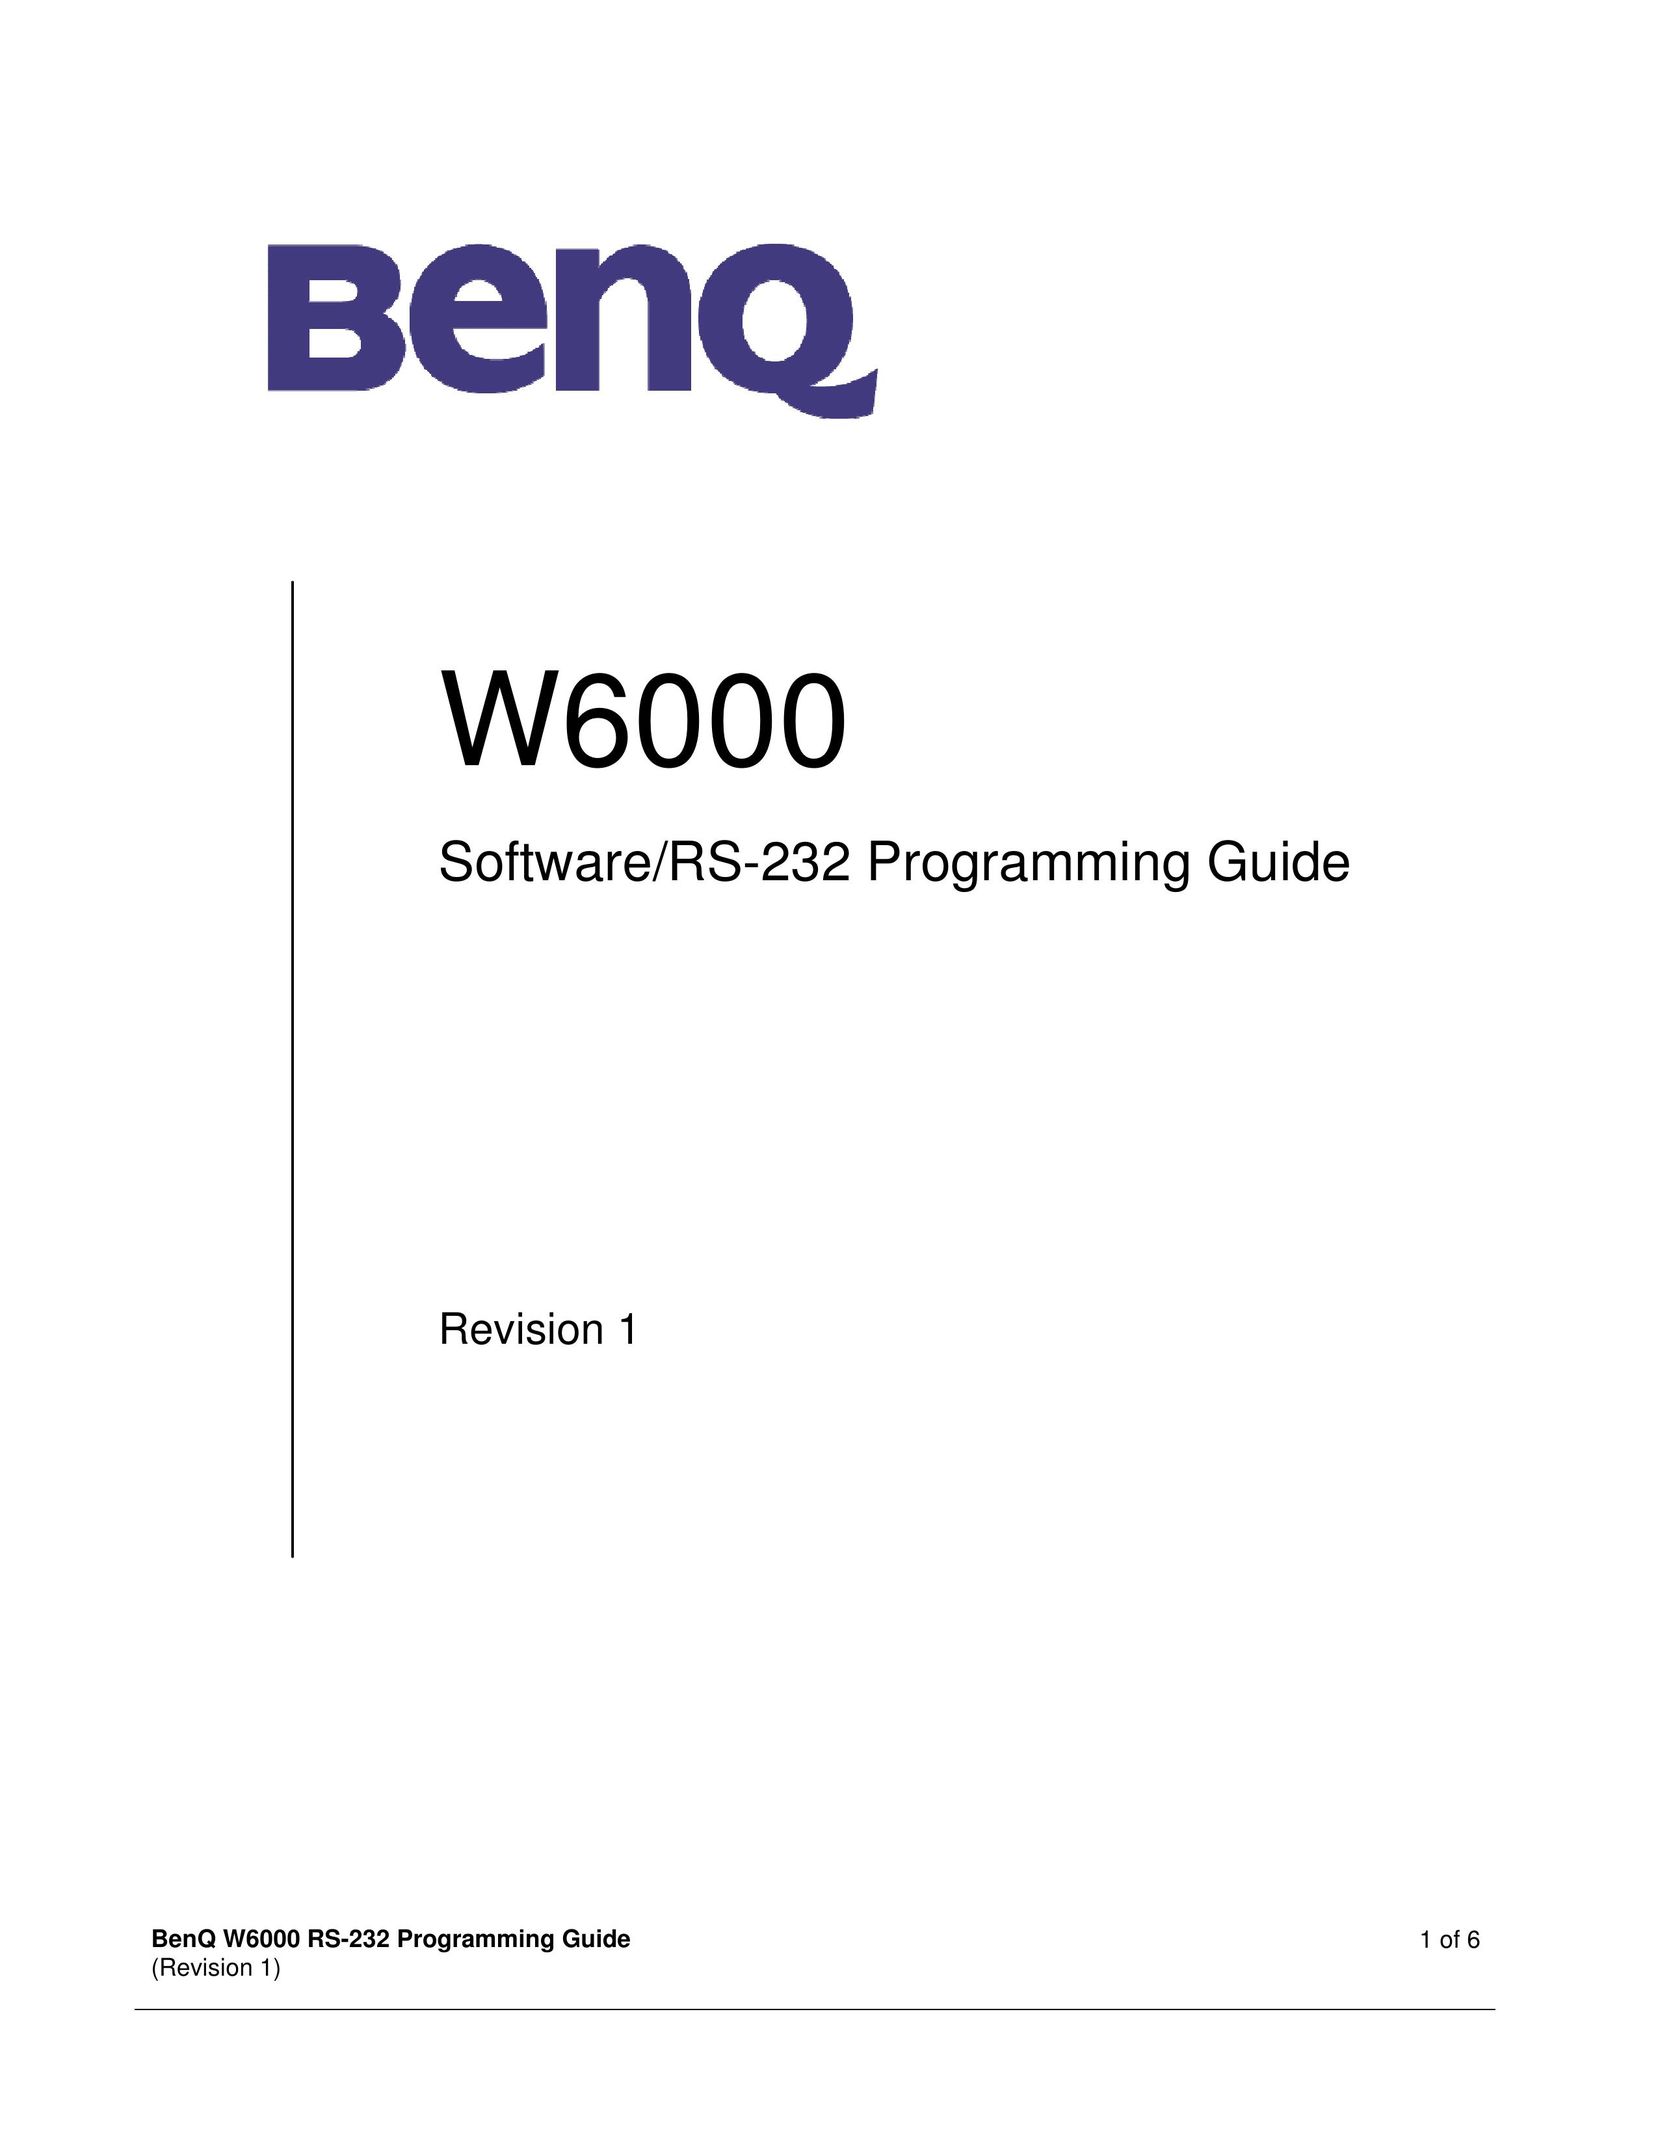 BenQ W6000 Speaker System User Manual